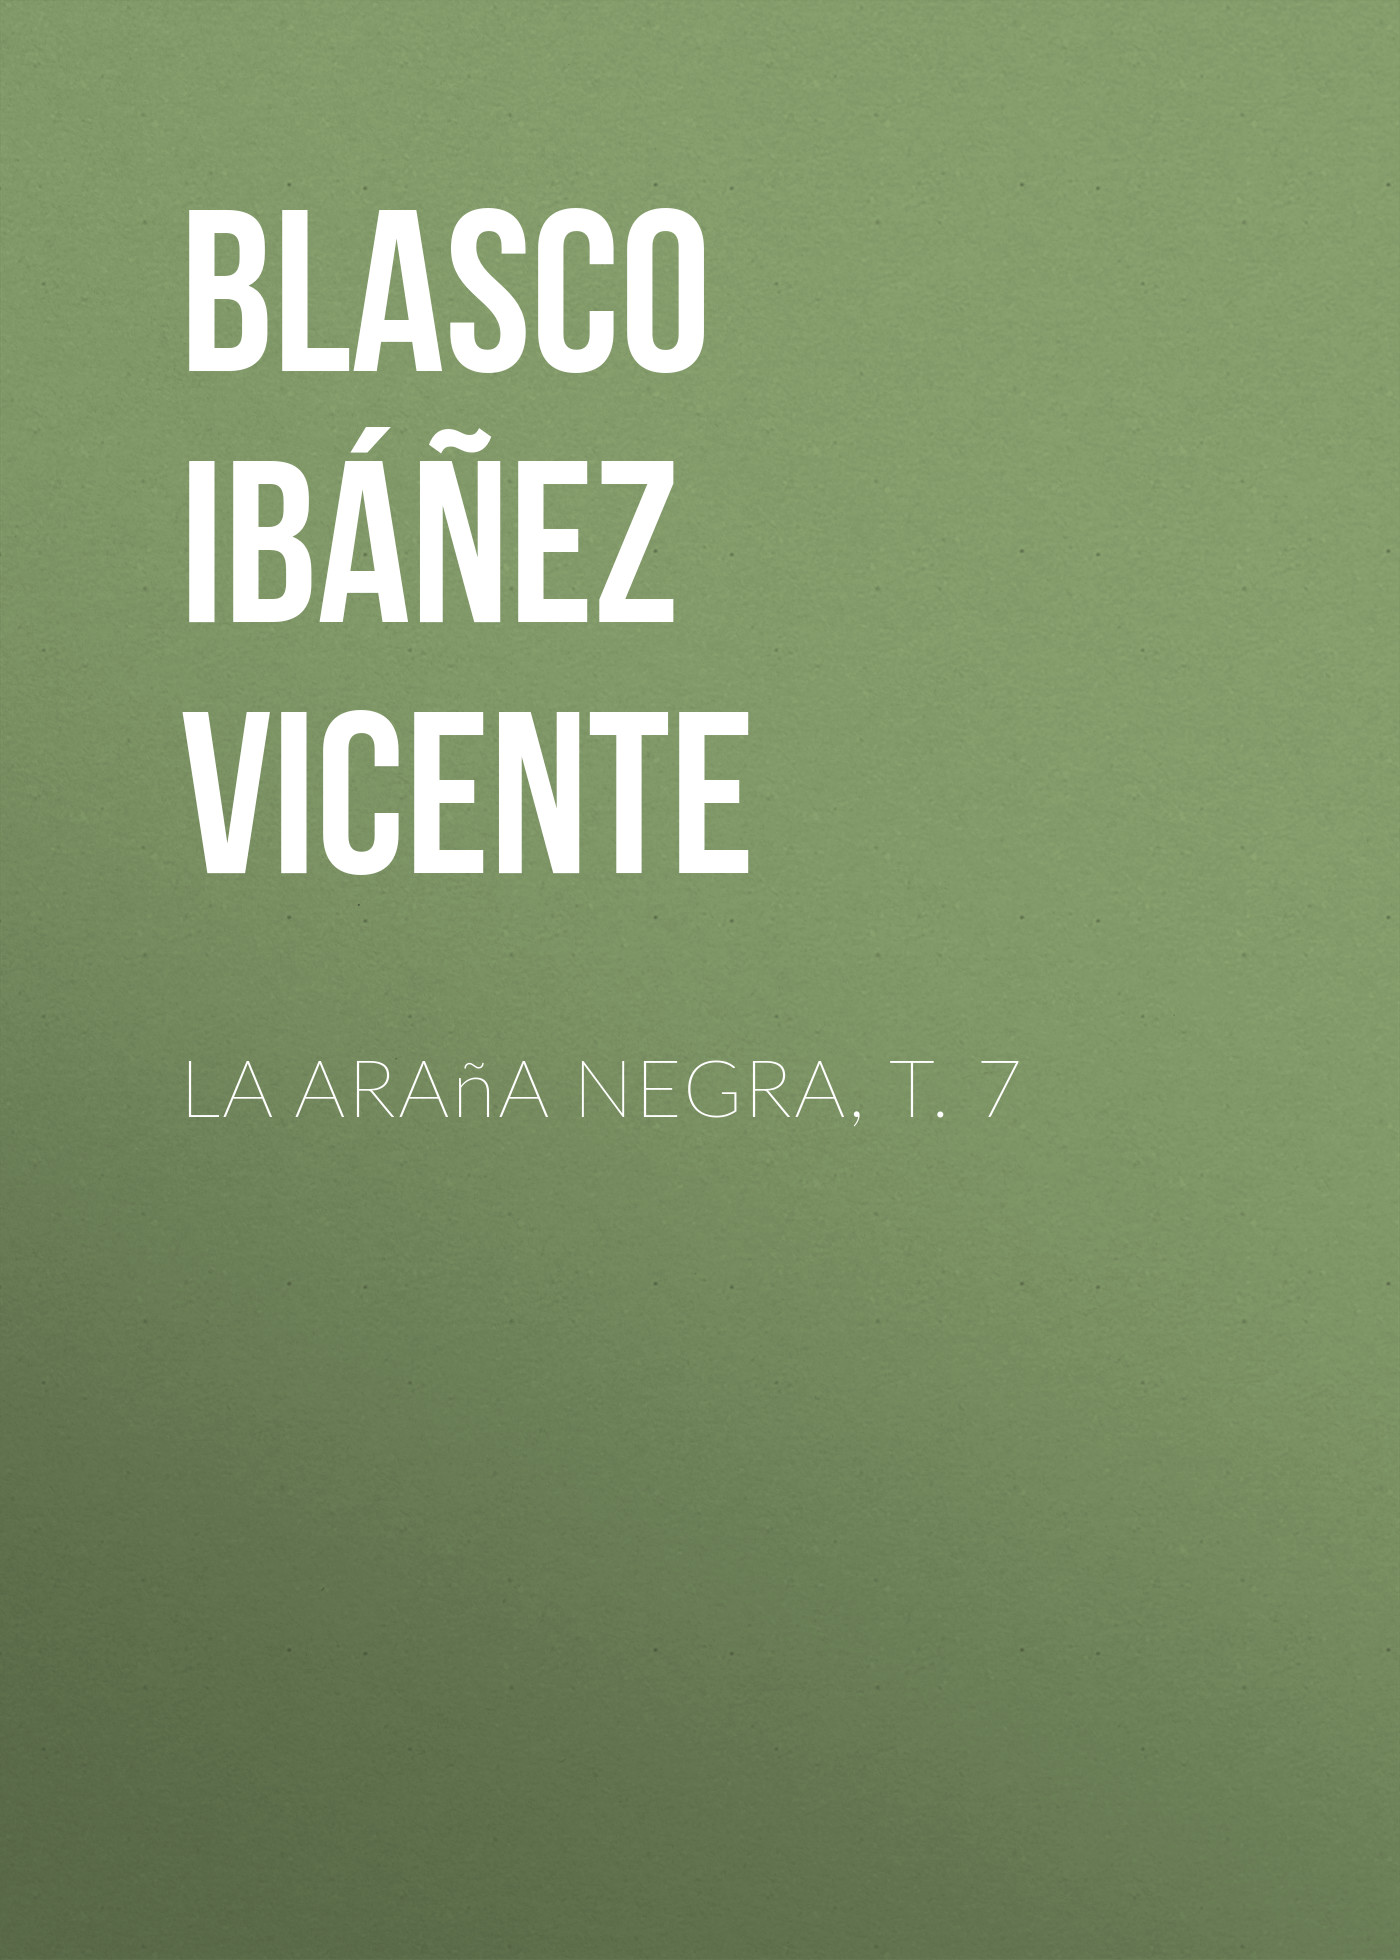 Книга La araña negra, t. 7 из серии , созданная Vicente Blasco Ibáñez, может относится к жанру Иностранные языки, Зарубежная старинная литература, Зарубежная классика. Стоимость электронной книги La araña negra, t. 7 с идентификатором 24178852 составляет 0 руб.